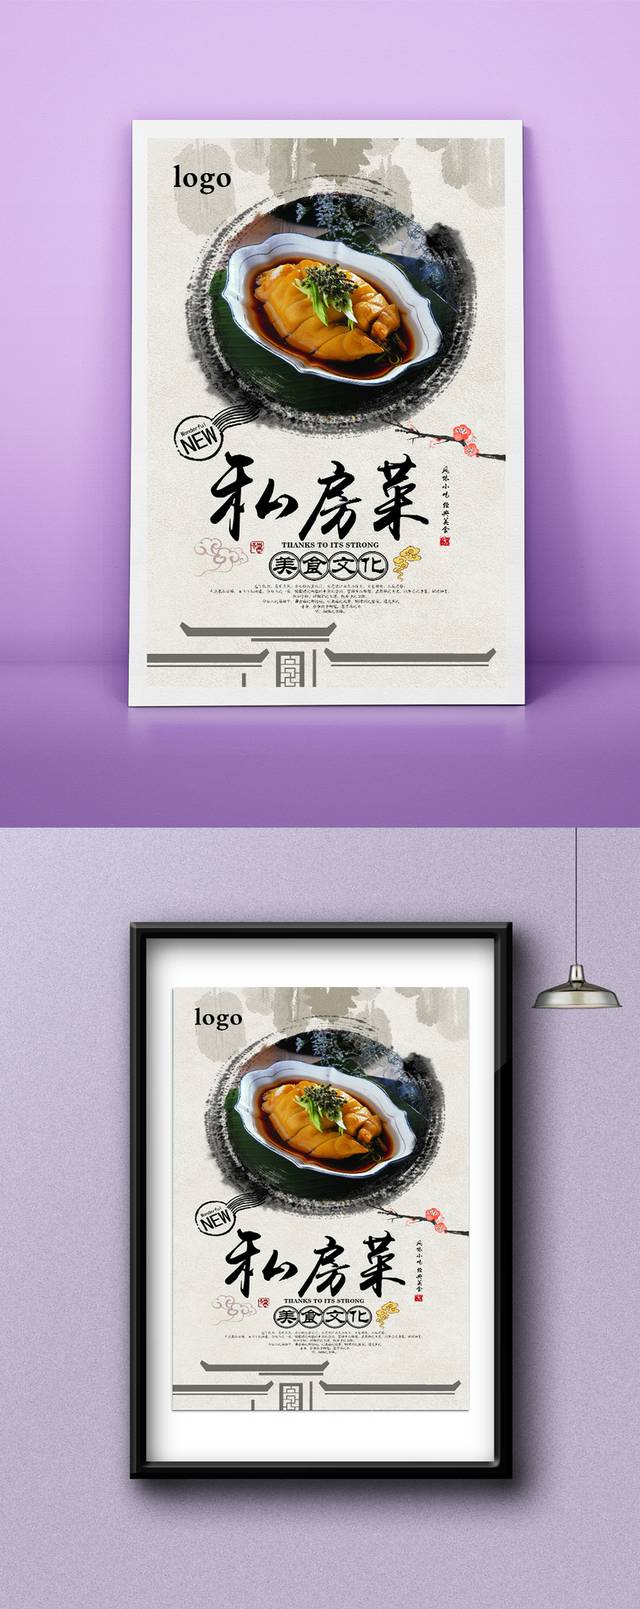 高档中国风私房菜宣传海报设计